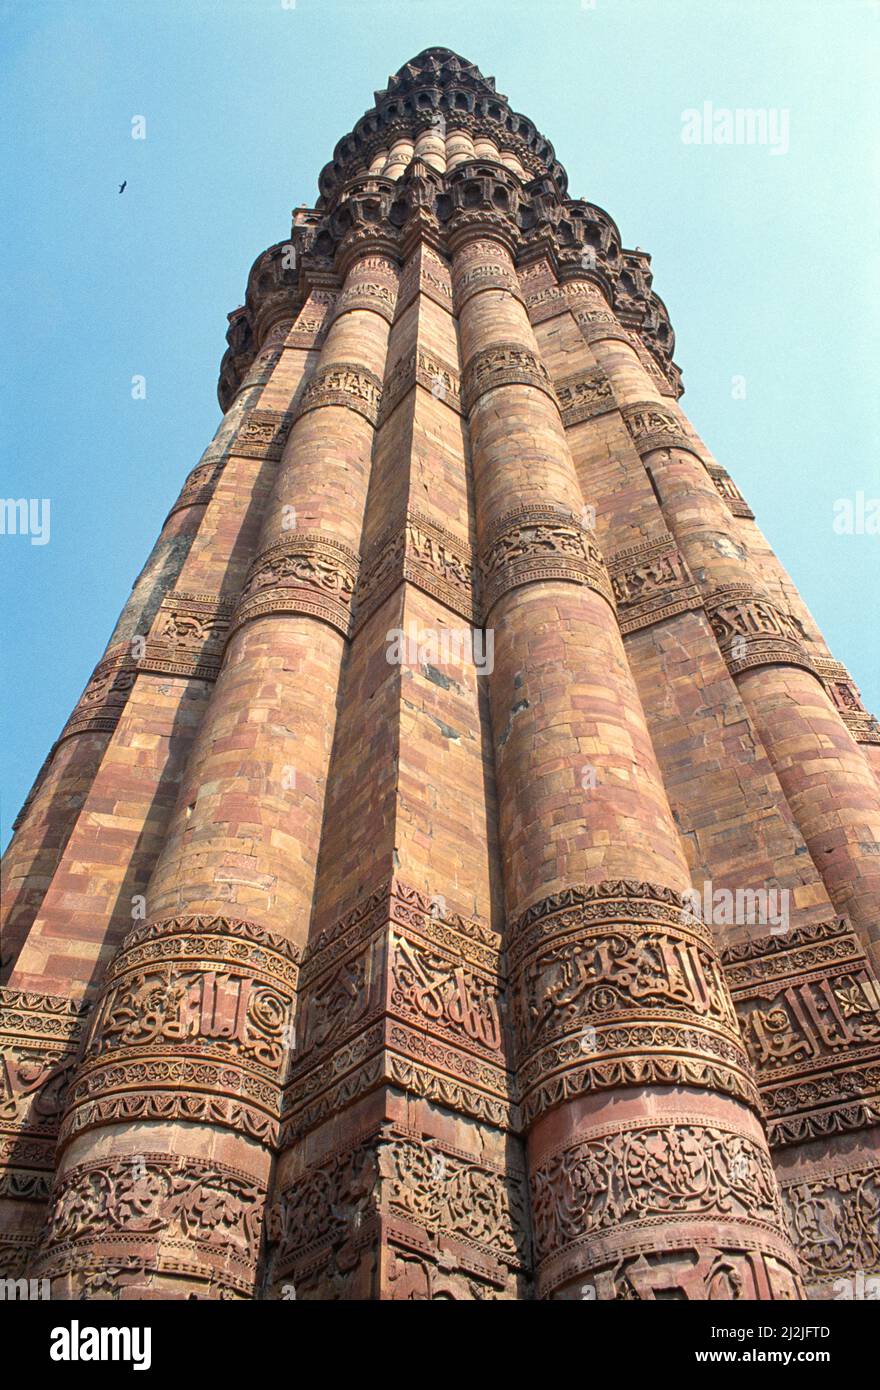 India. Delhi. Minar. Qutb. Punto de vista bajo cerca del minar de piedra tallada. Foto de stock